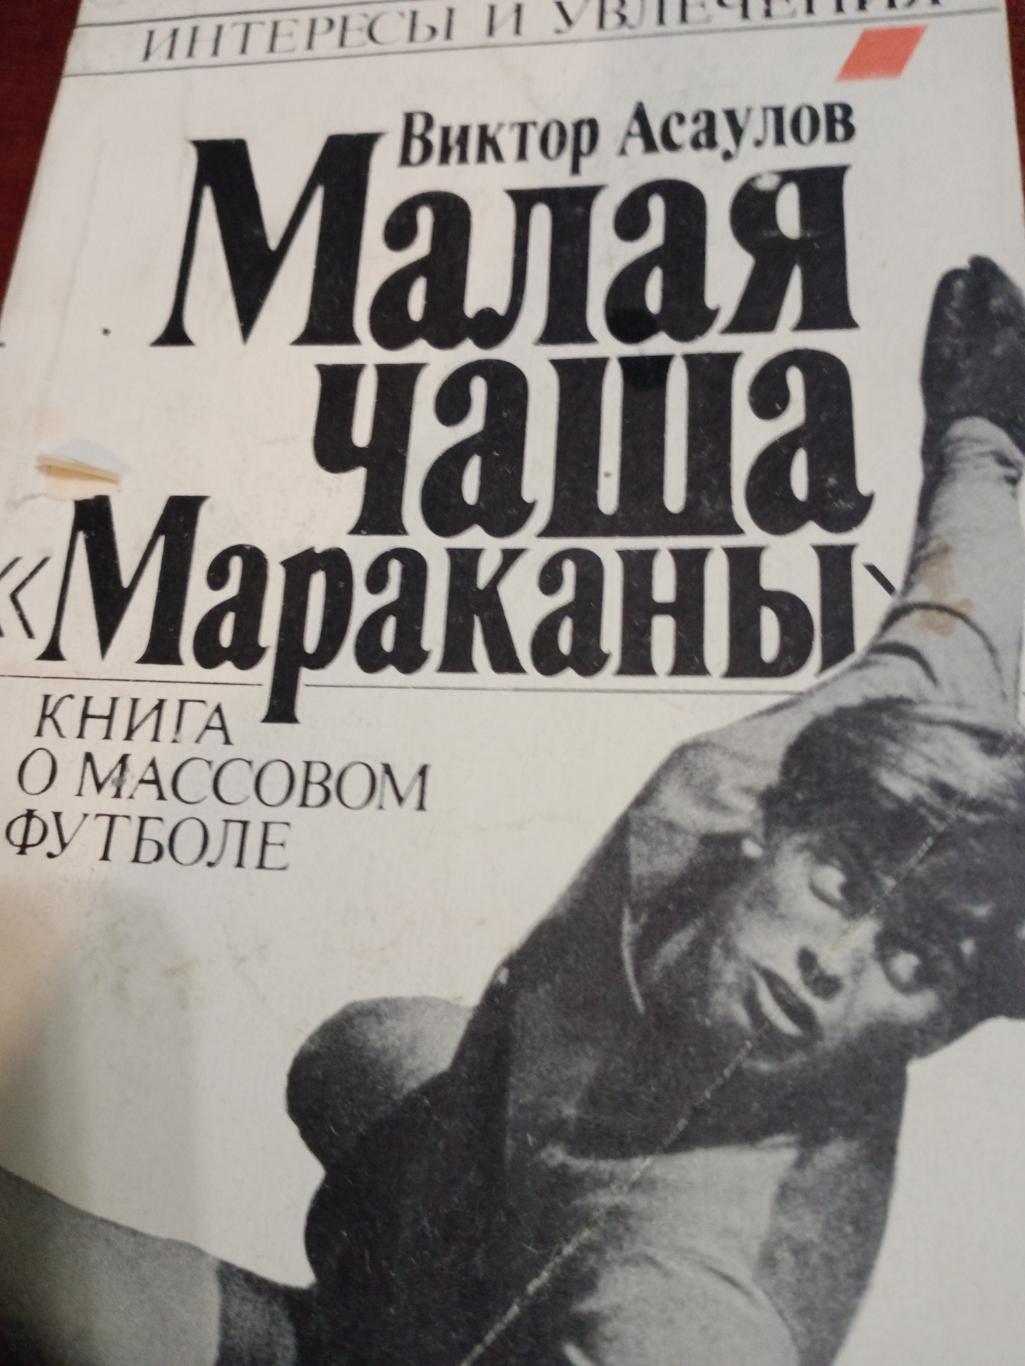 В.Асаулов Малая чаша Мараканы.Изд. Москва, Профиздат, 1990.